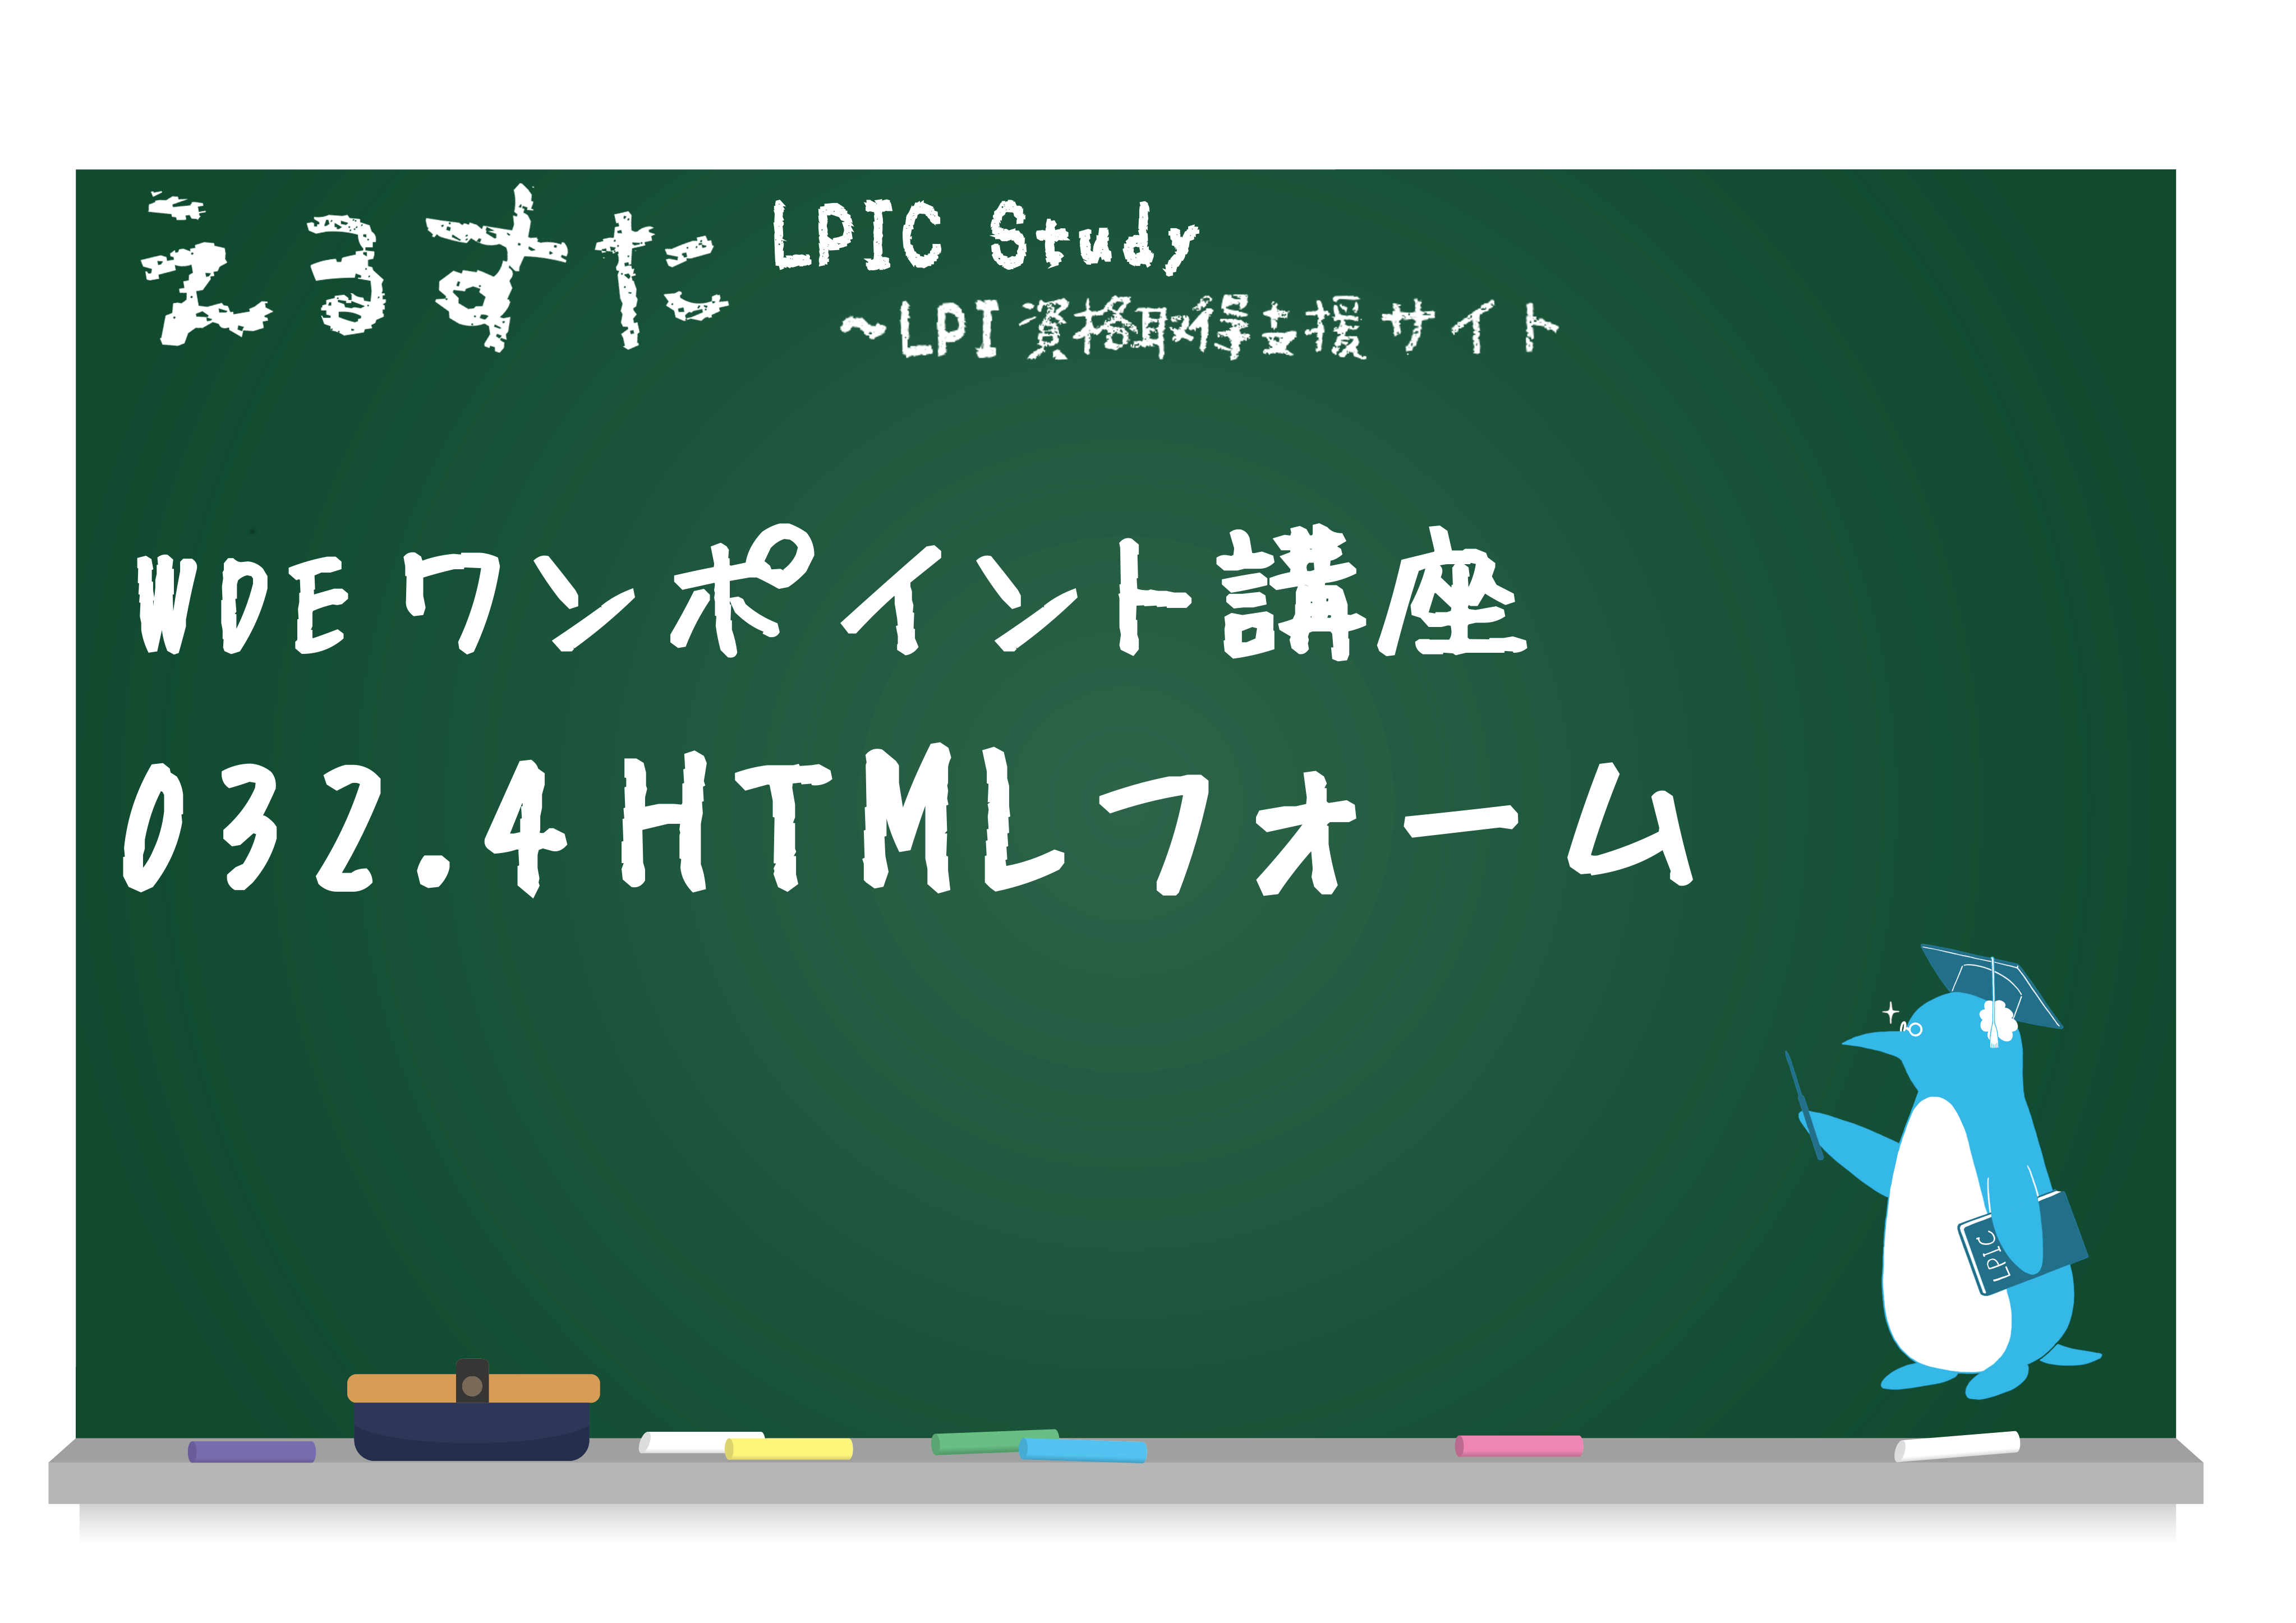 032.4 HTMLフォーム